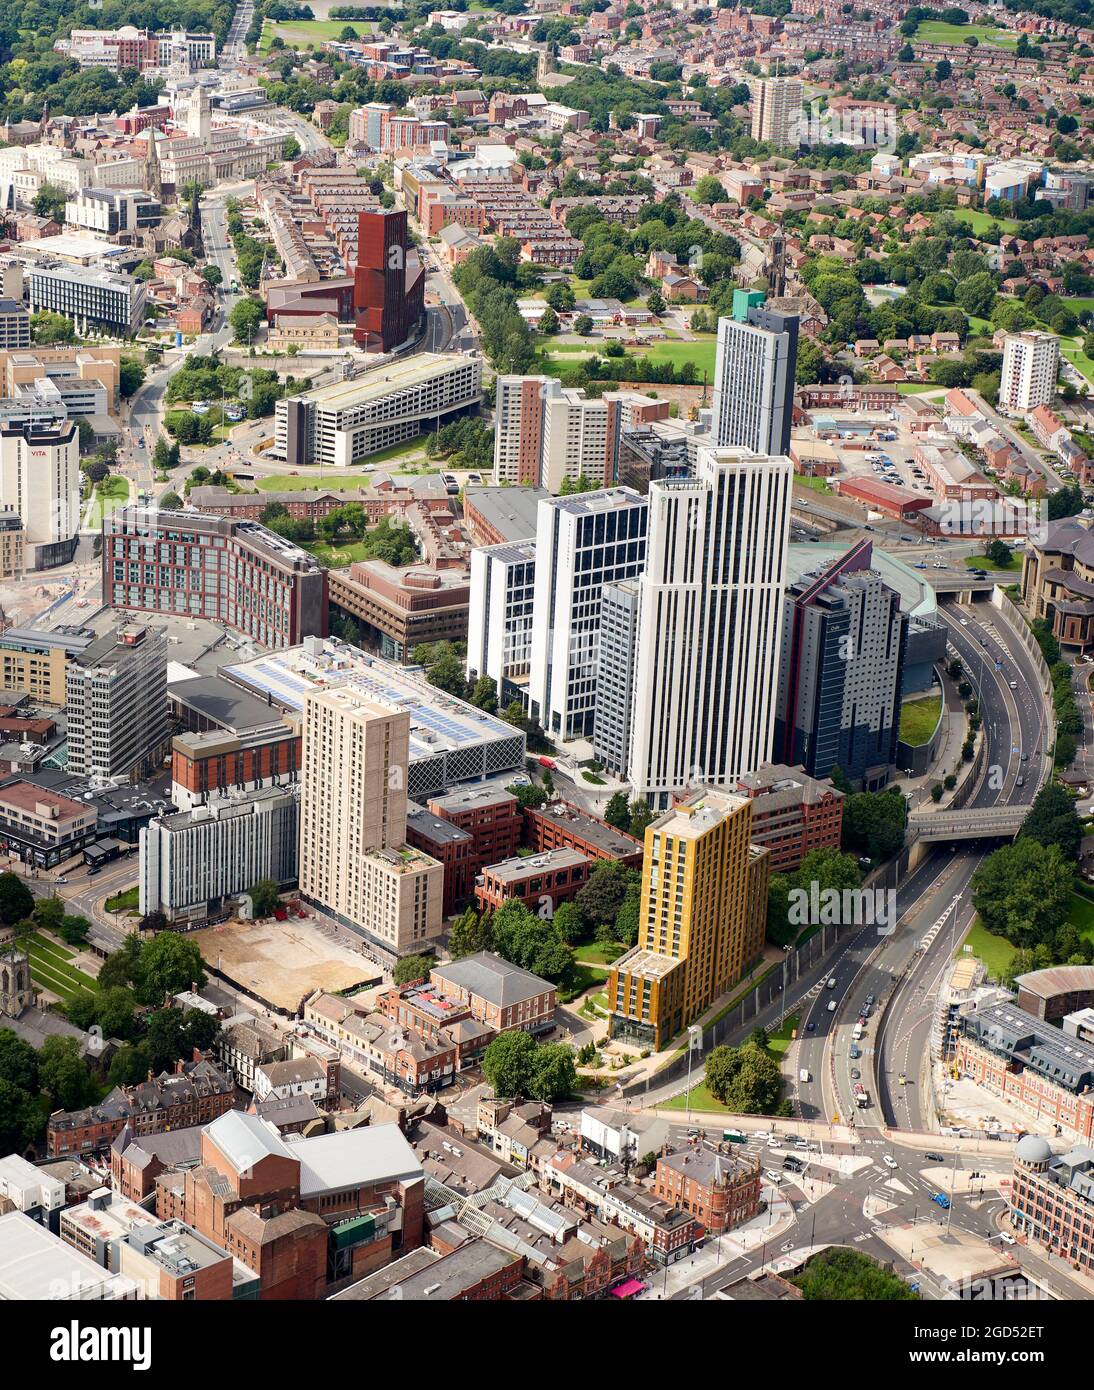 Une vue aérienne des tours d'hébergement des nouveaux étudiants, Leeds City Centre, West Yorkshire, nord de l'Angleterre, Royaume-Uni Banque D'Images